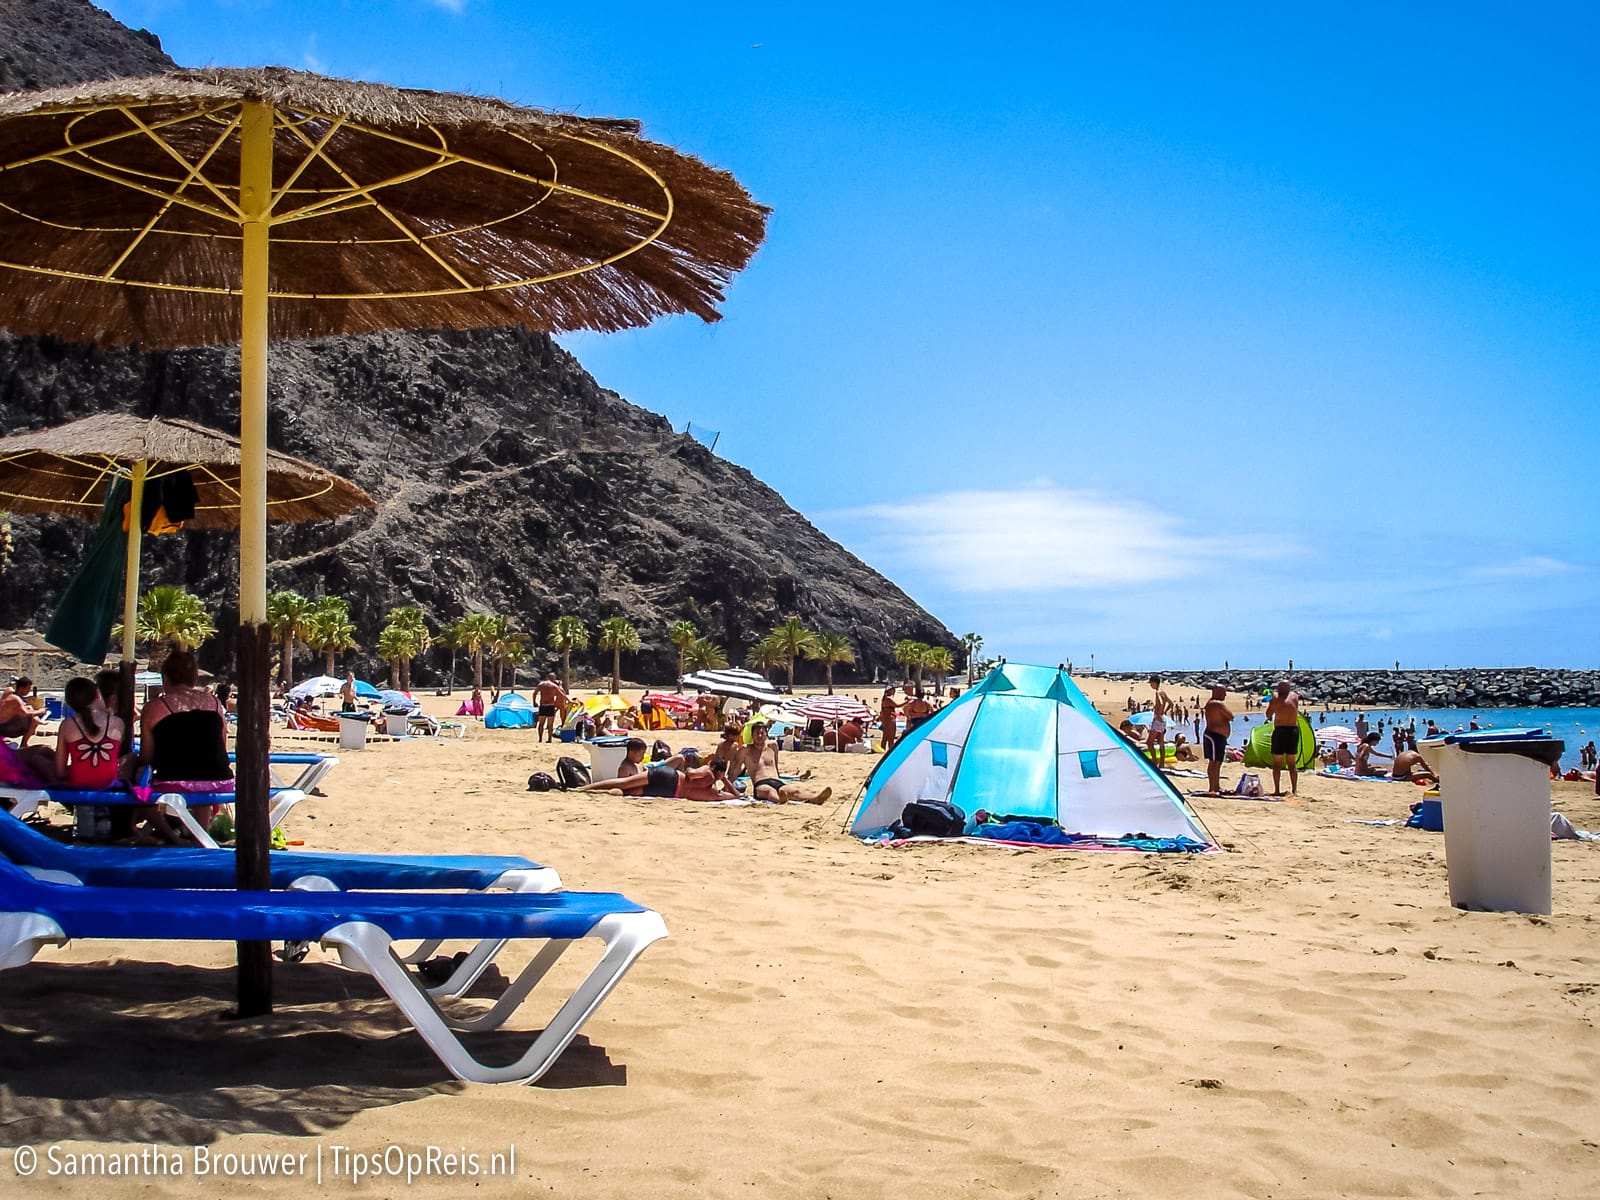 Tenerife - Playa de las Teresitas